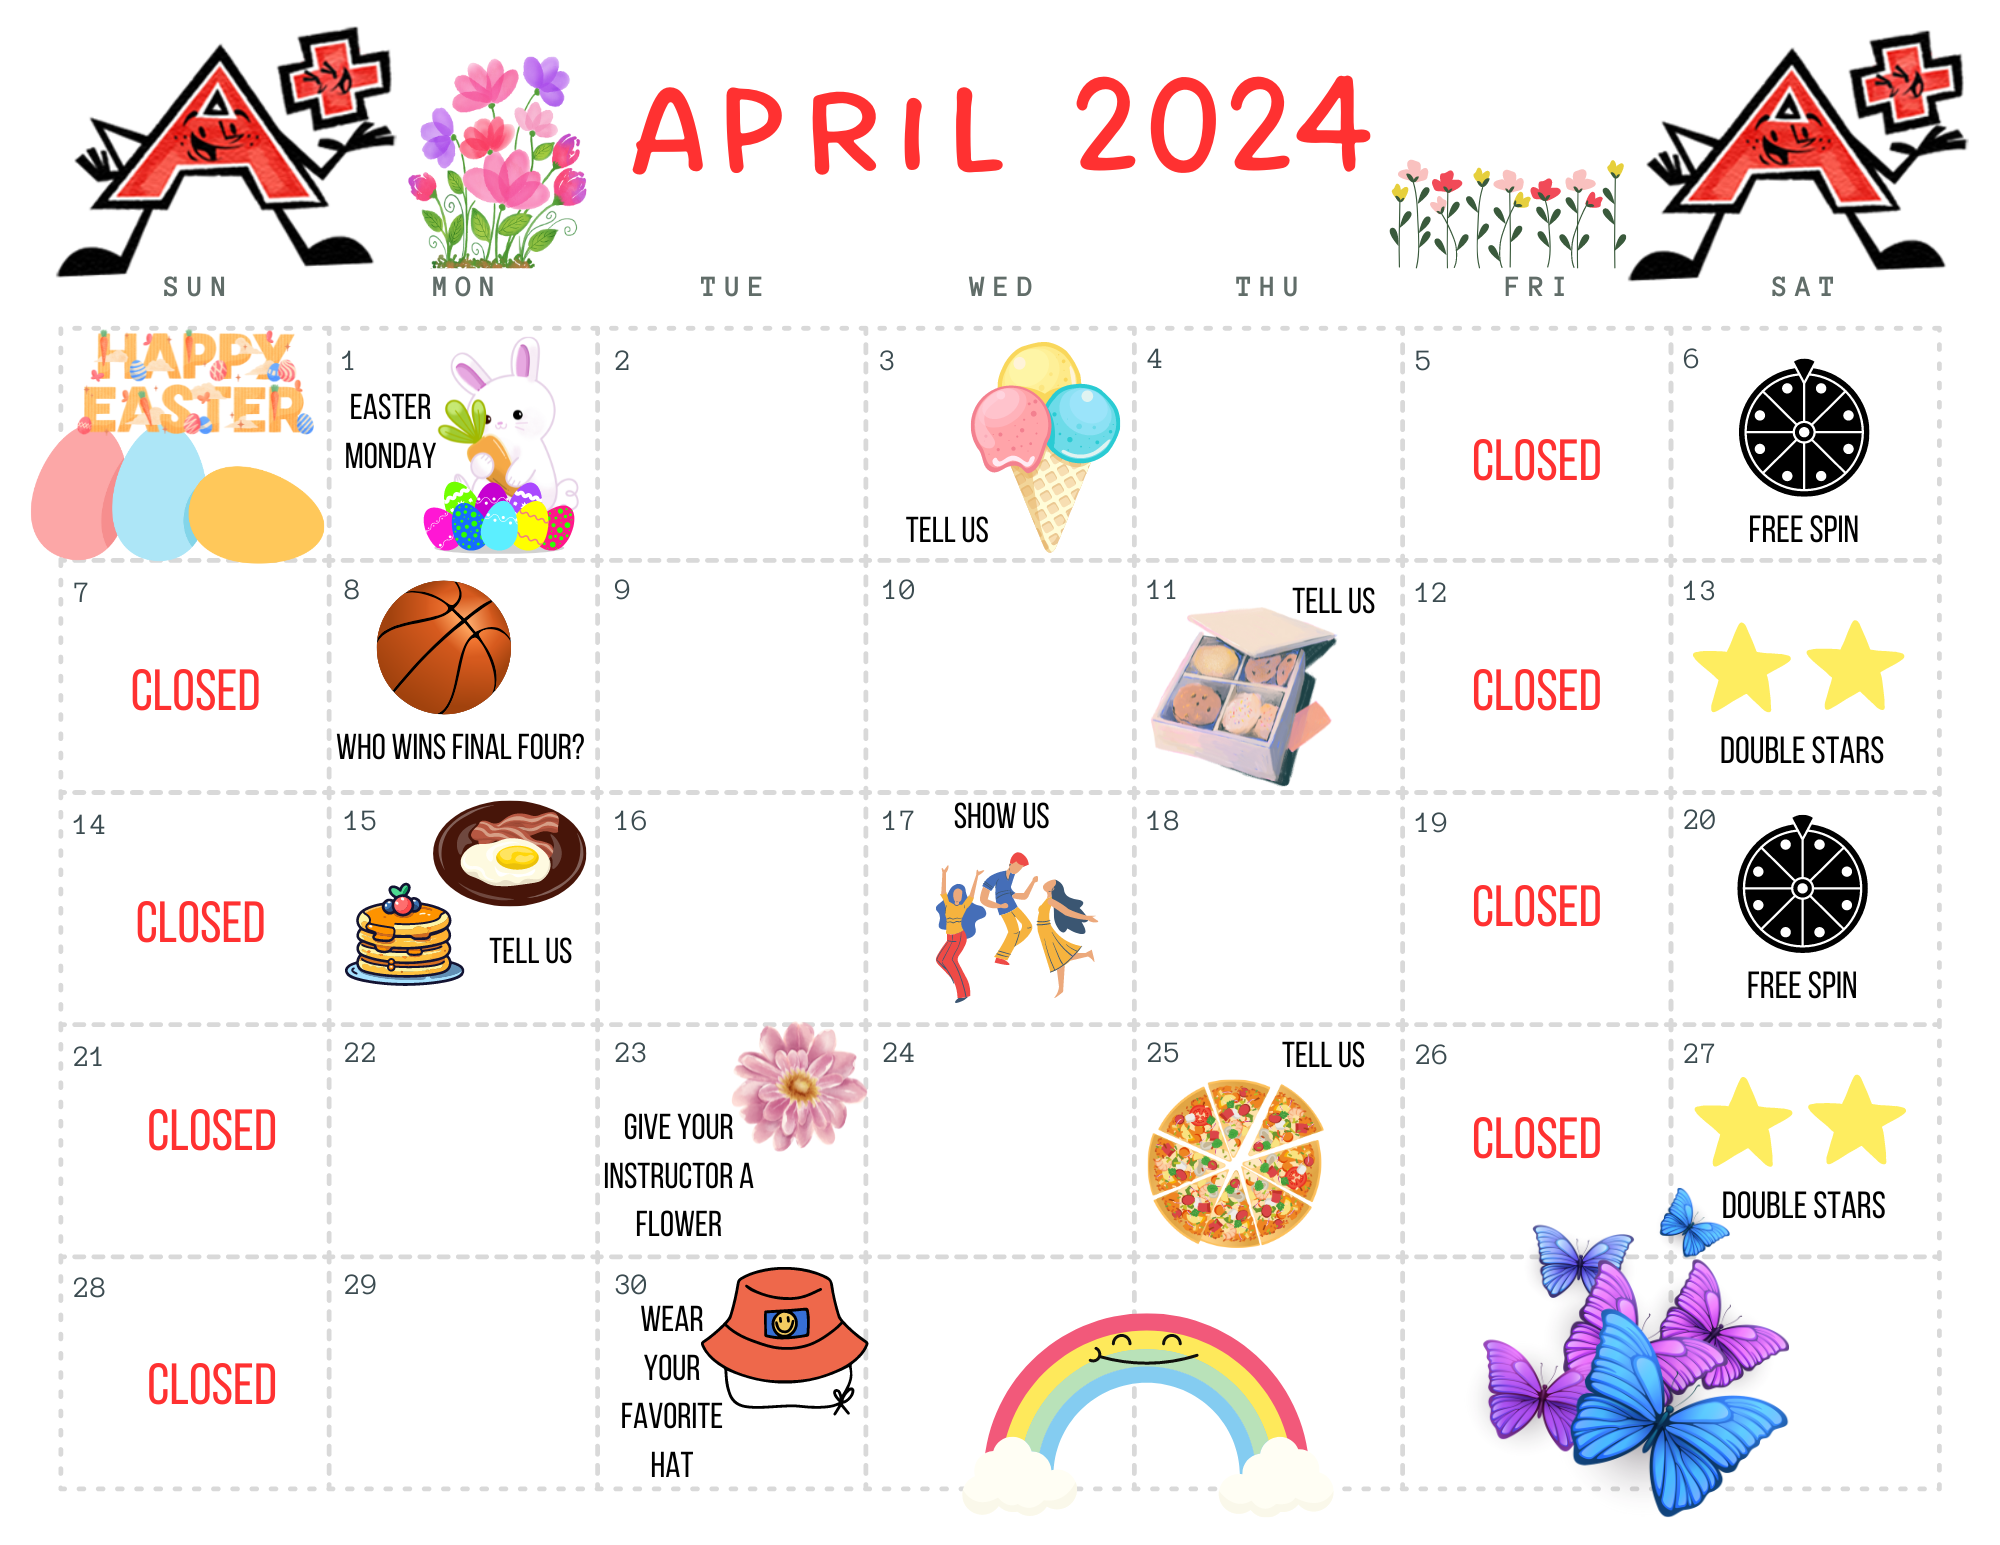 April 2024 Fun Days